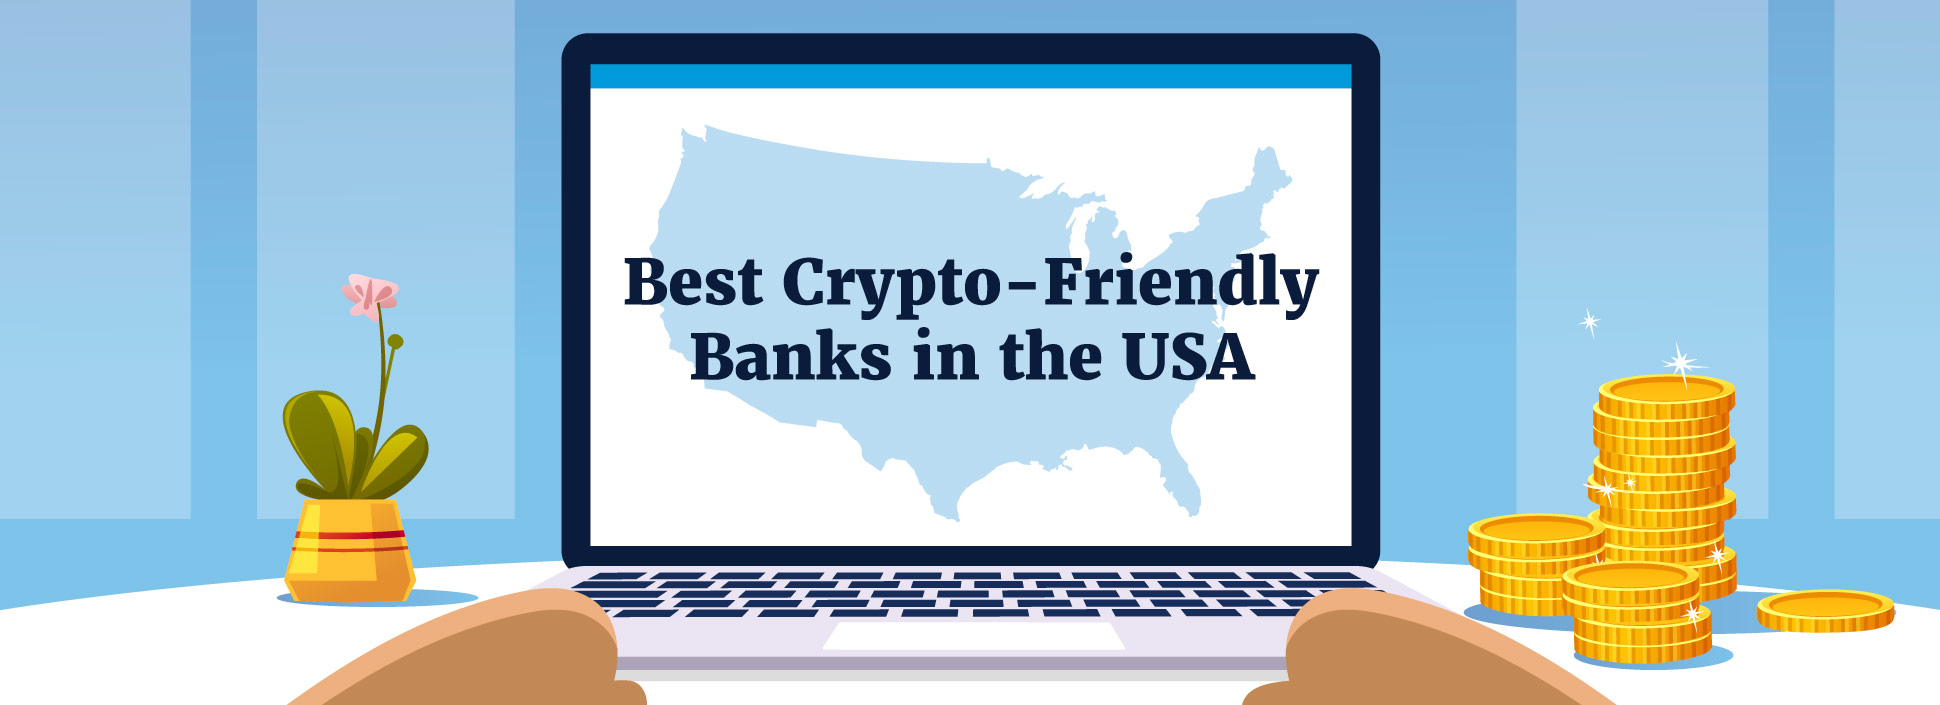 Top European Crypto-friendly Banks